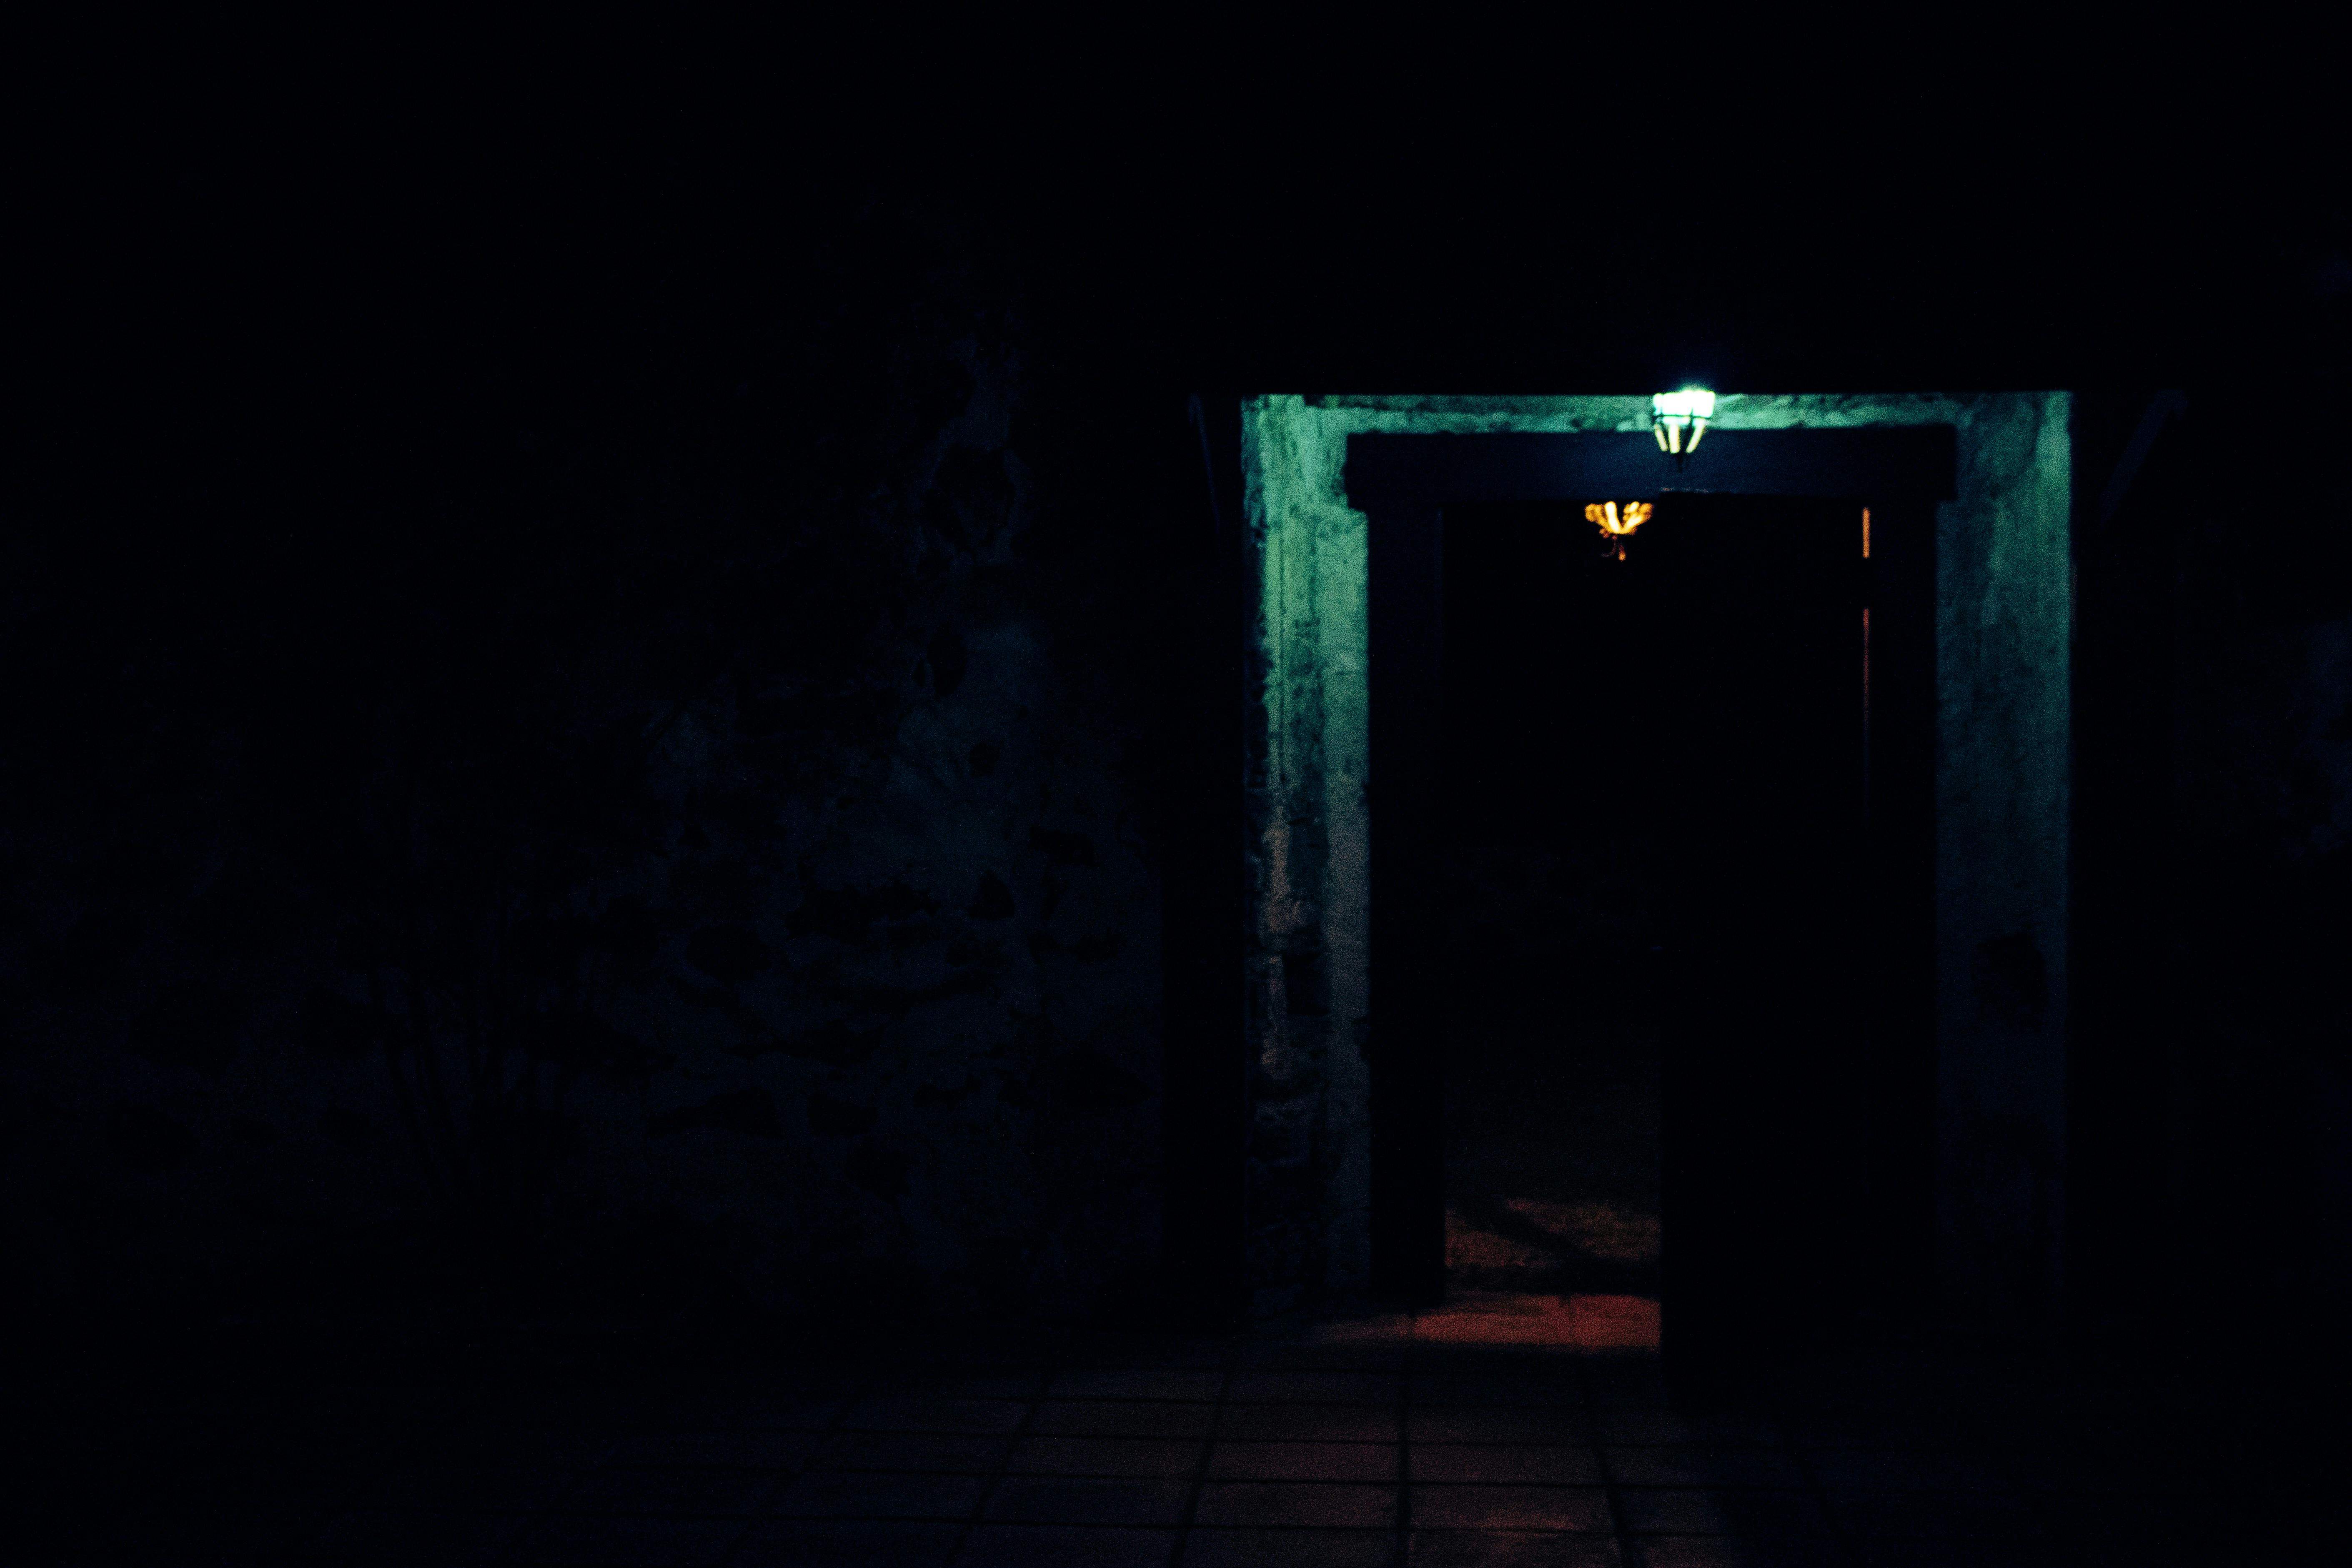 A door in the dark